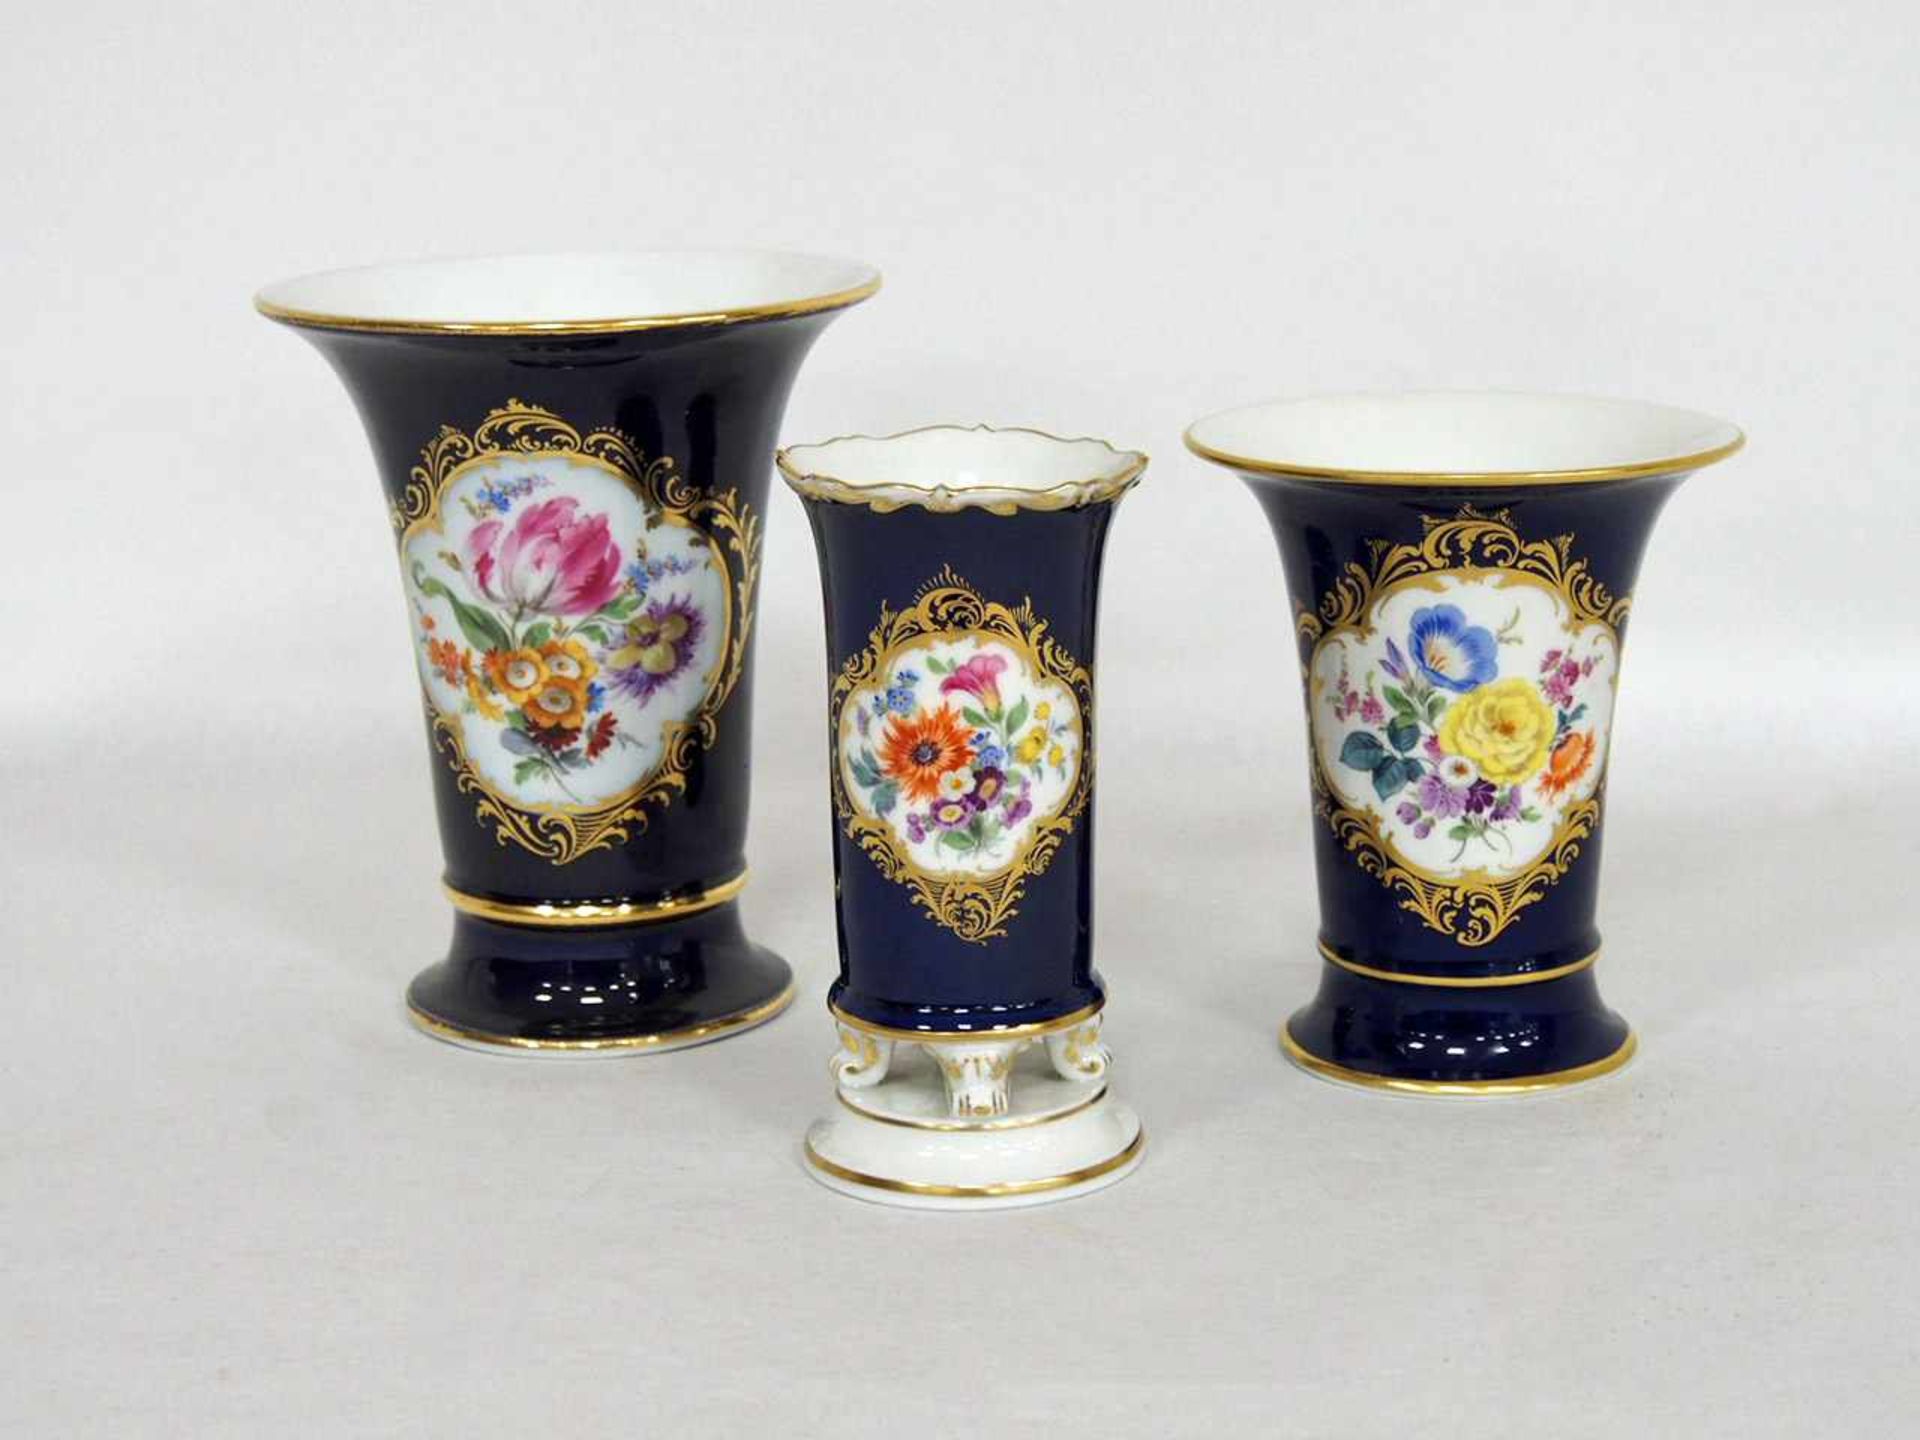 Drei VasenMeissen, kobaldblau, Blumenbouquet-Malerei, Vergoldung (minimaler Abrieb der Vergoldung